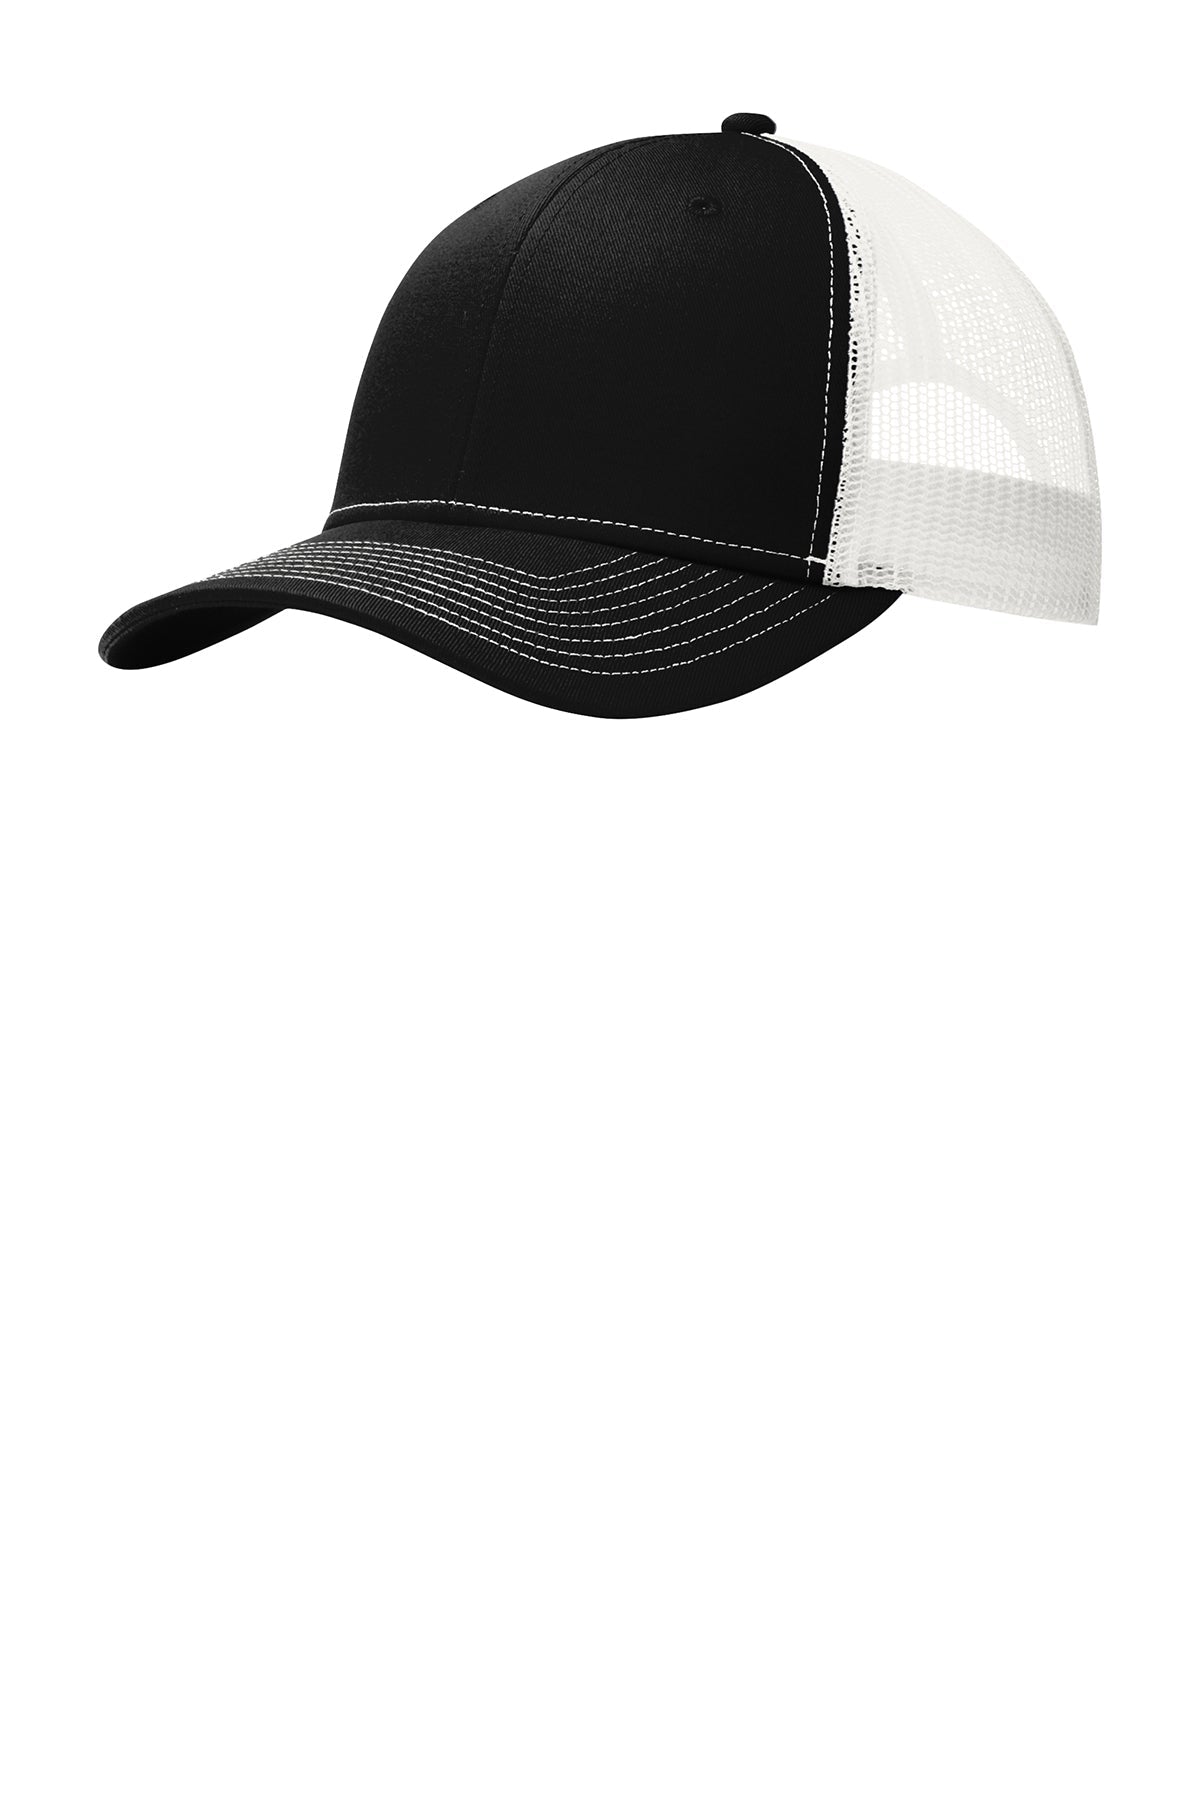 Port Authority Snapback Trucker Branded Caps, Black/ White